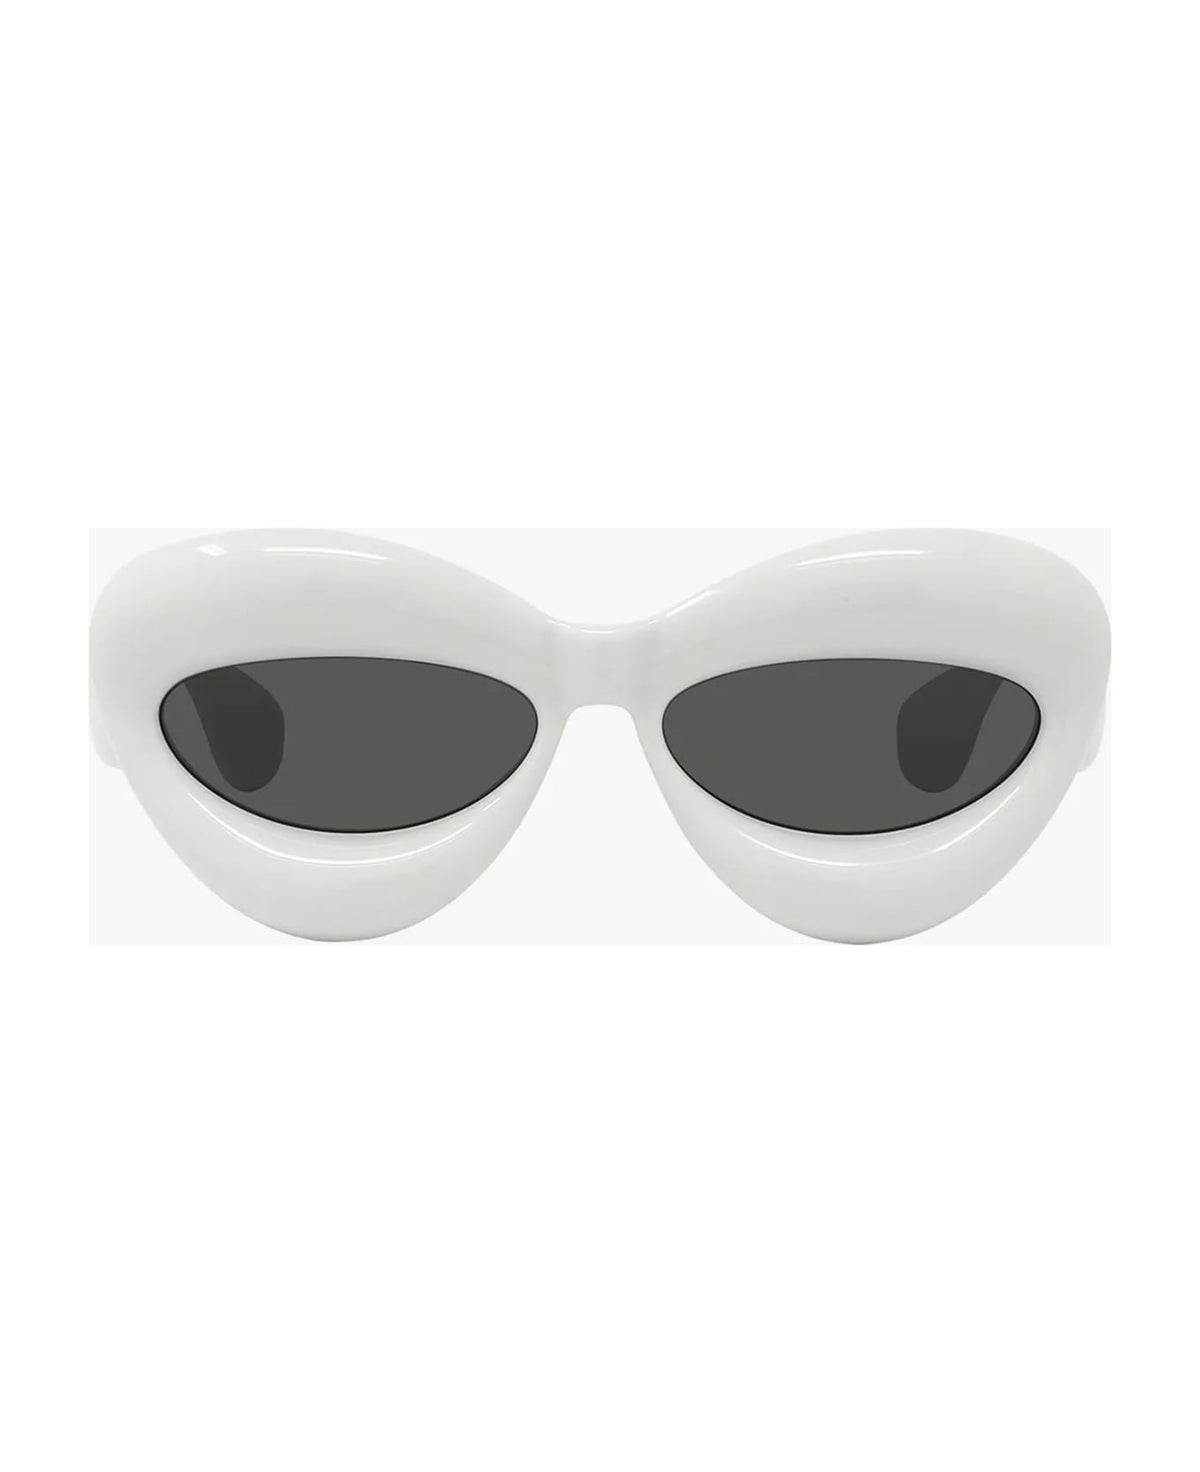 Lw40097i - White Sunglasses